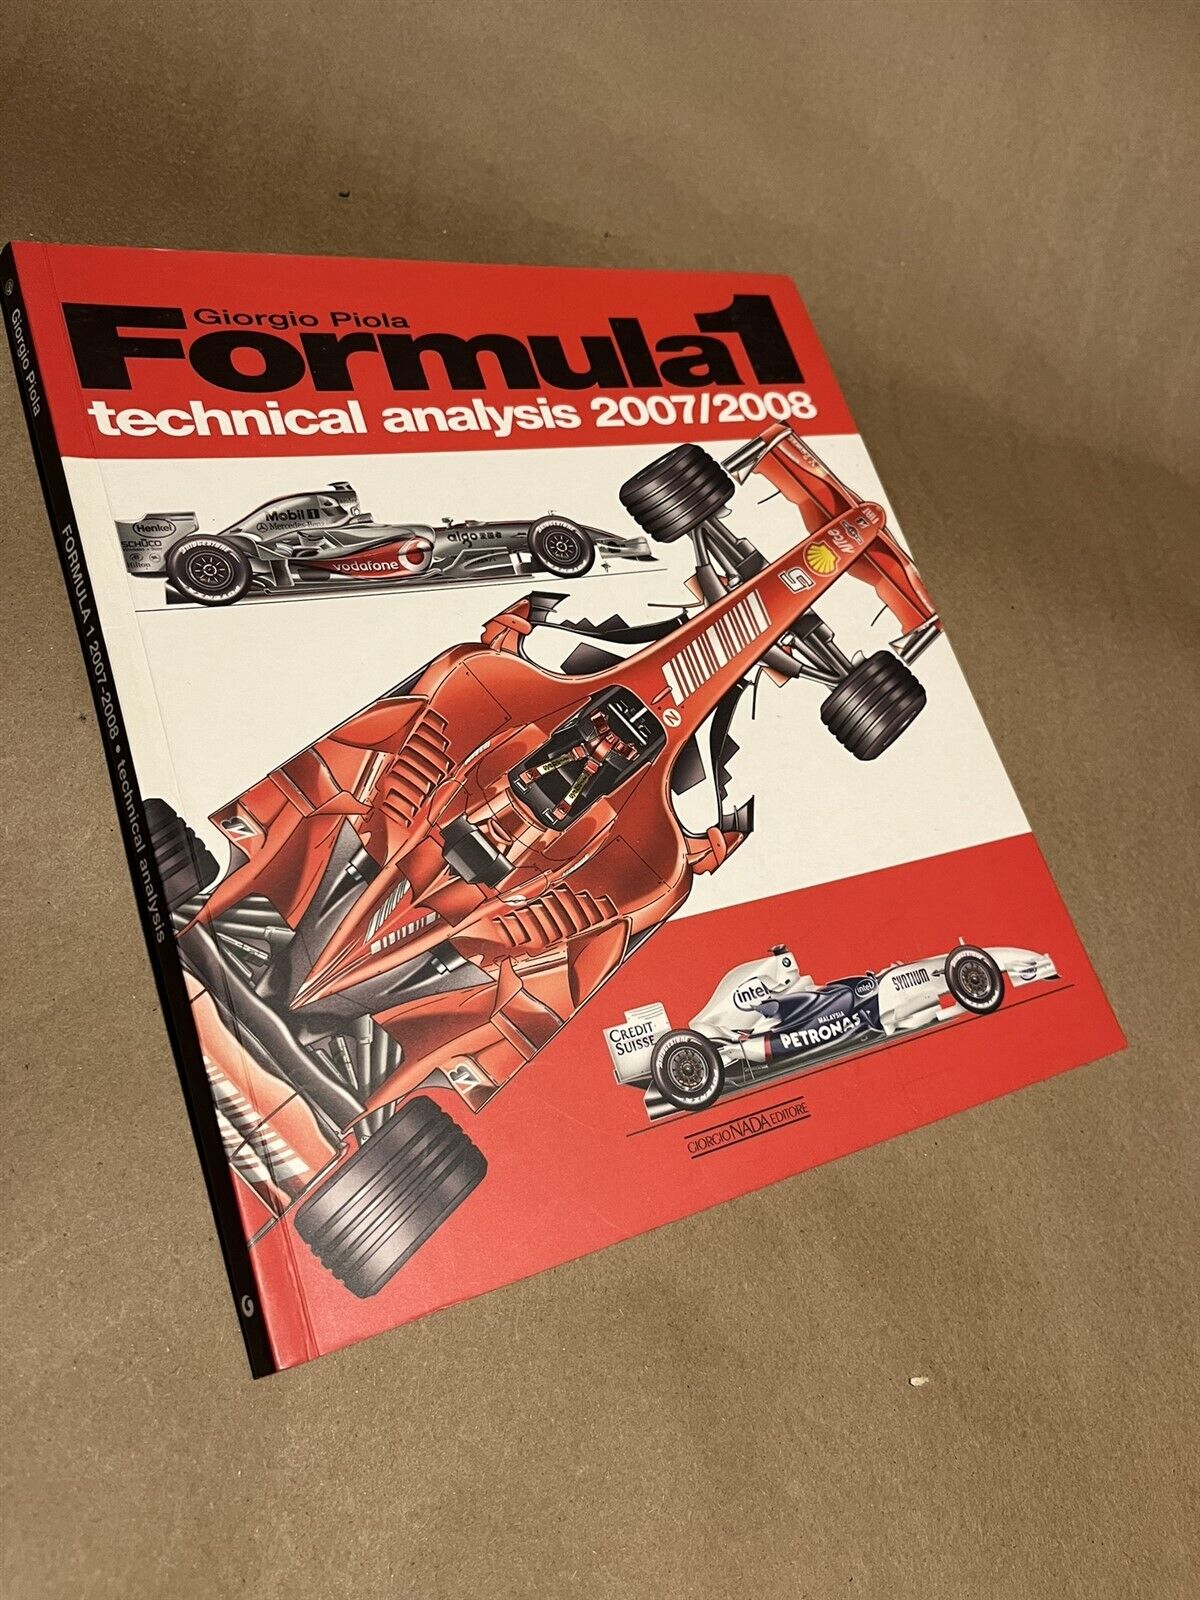 Book Formula One Giorgio Piola Technical Analysis 2007/2008